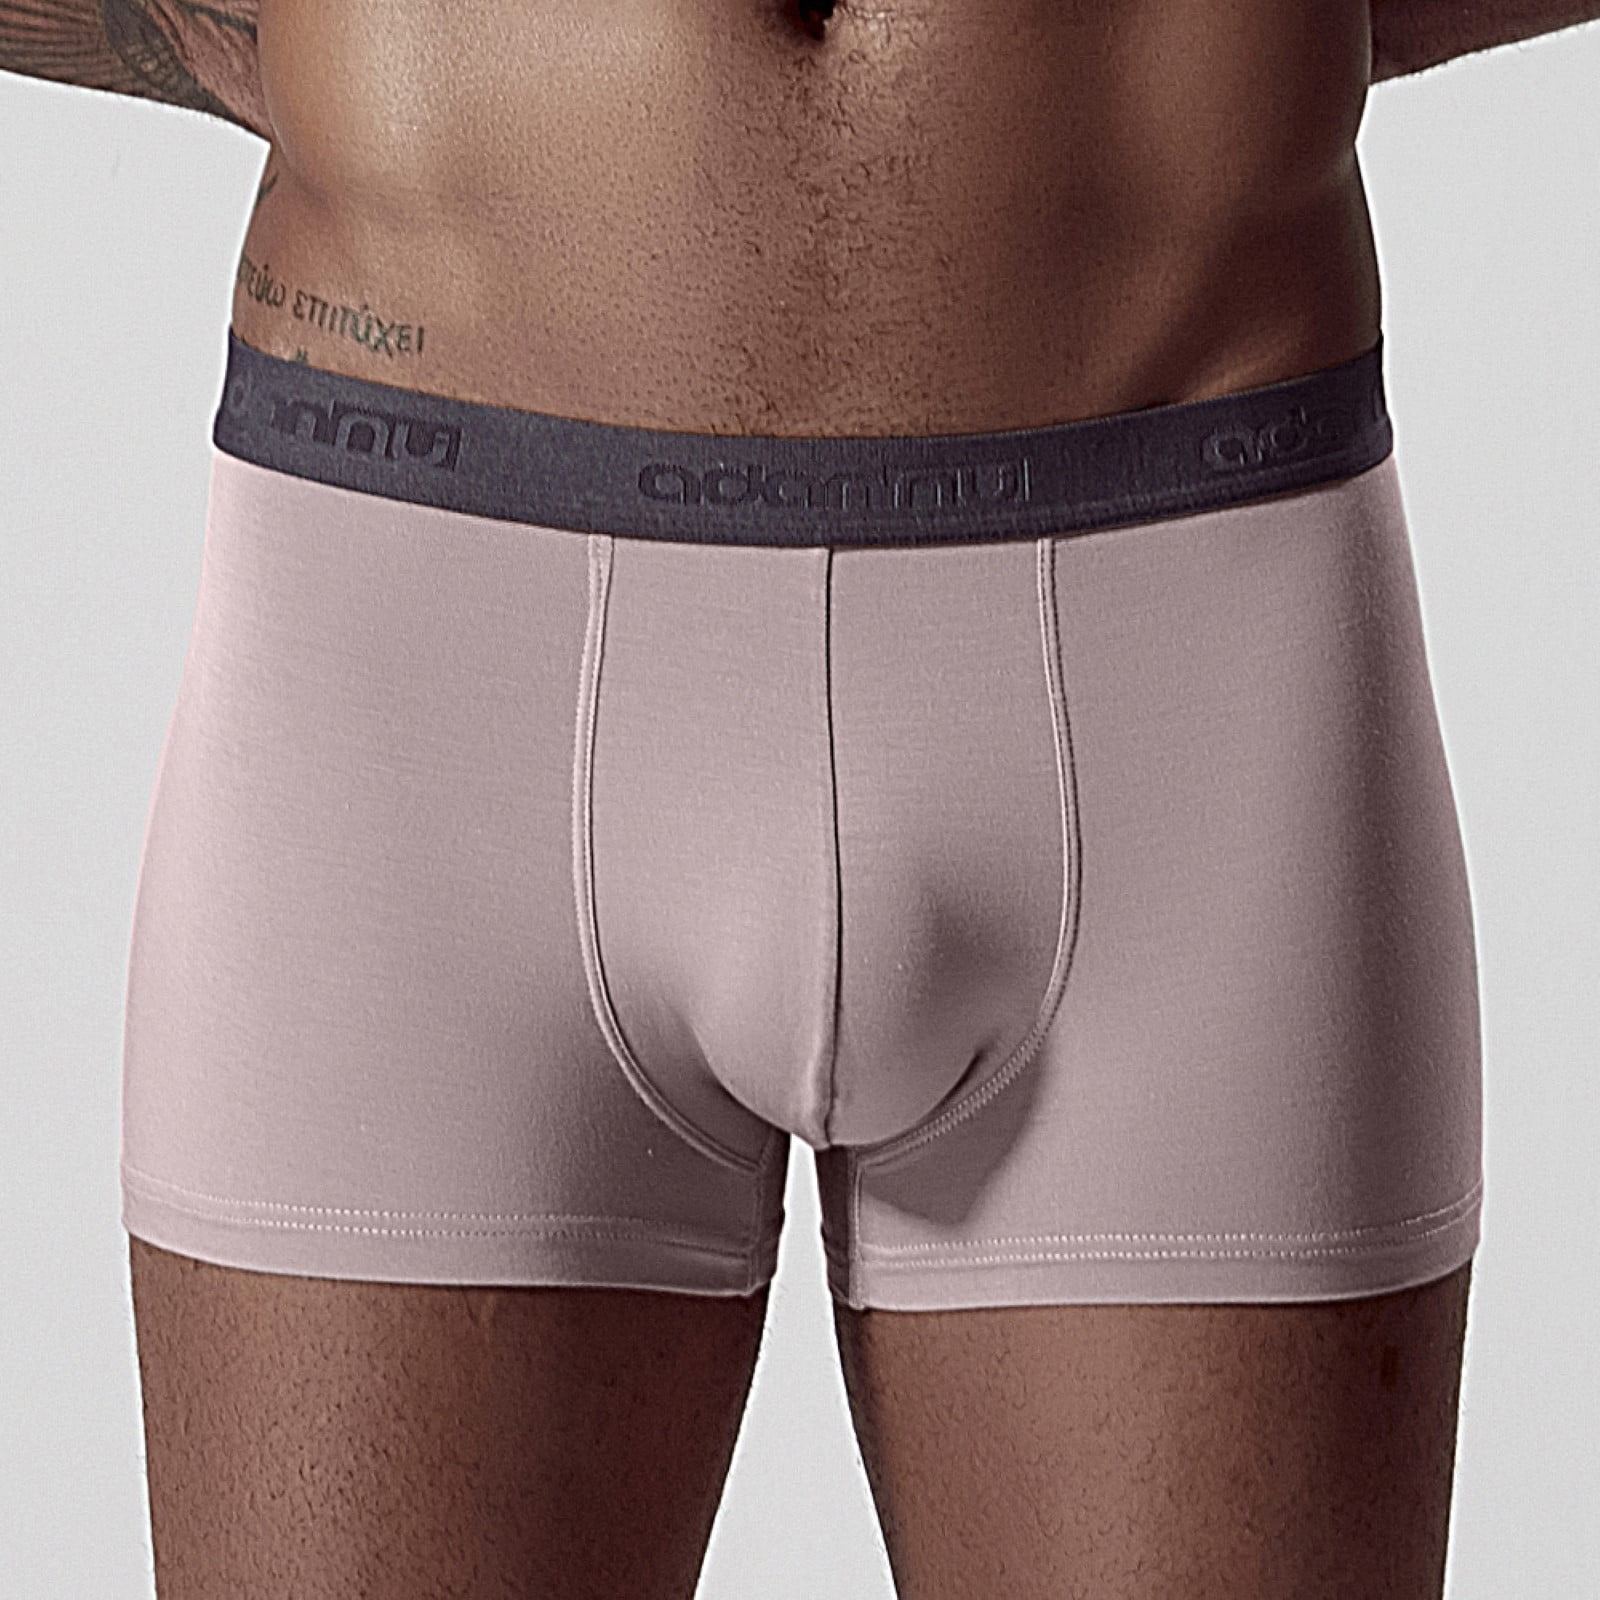 3pcs/lot Men's underwear Boxers cotton mid-low rise slim summer